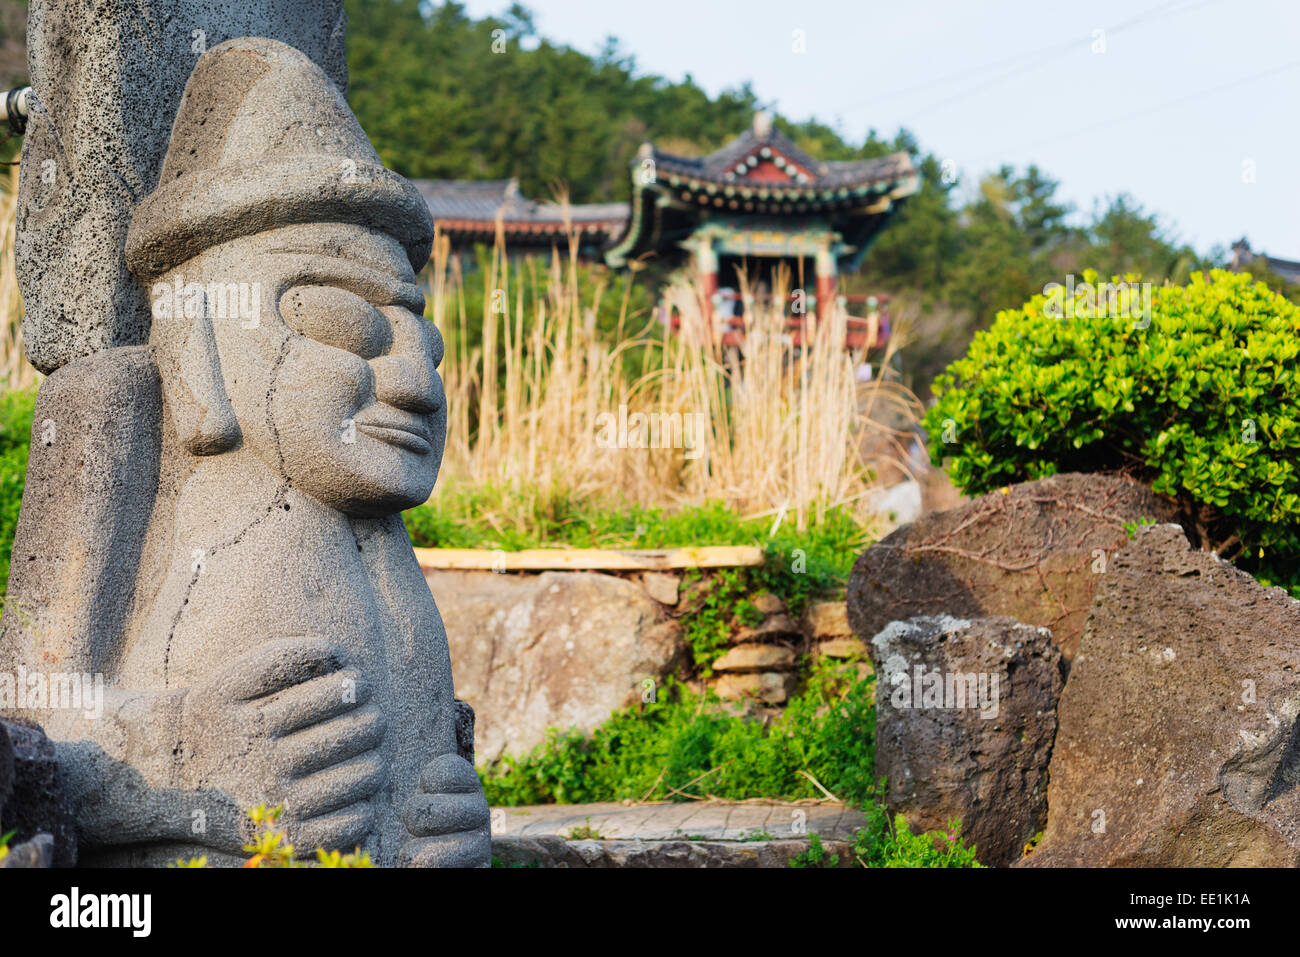 Hareubang harubang (DOL) la protection et la fécondité à Sanbanggulsa statue Temple, l'île de Jeju, Corée du Sud, Asie Banque D'Images